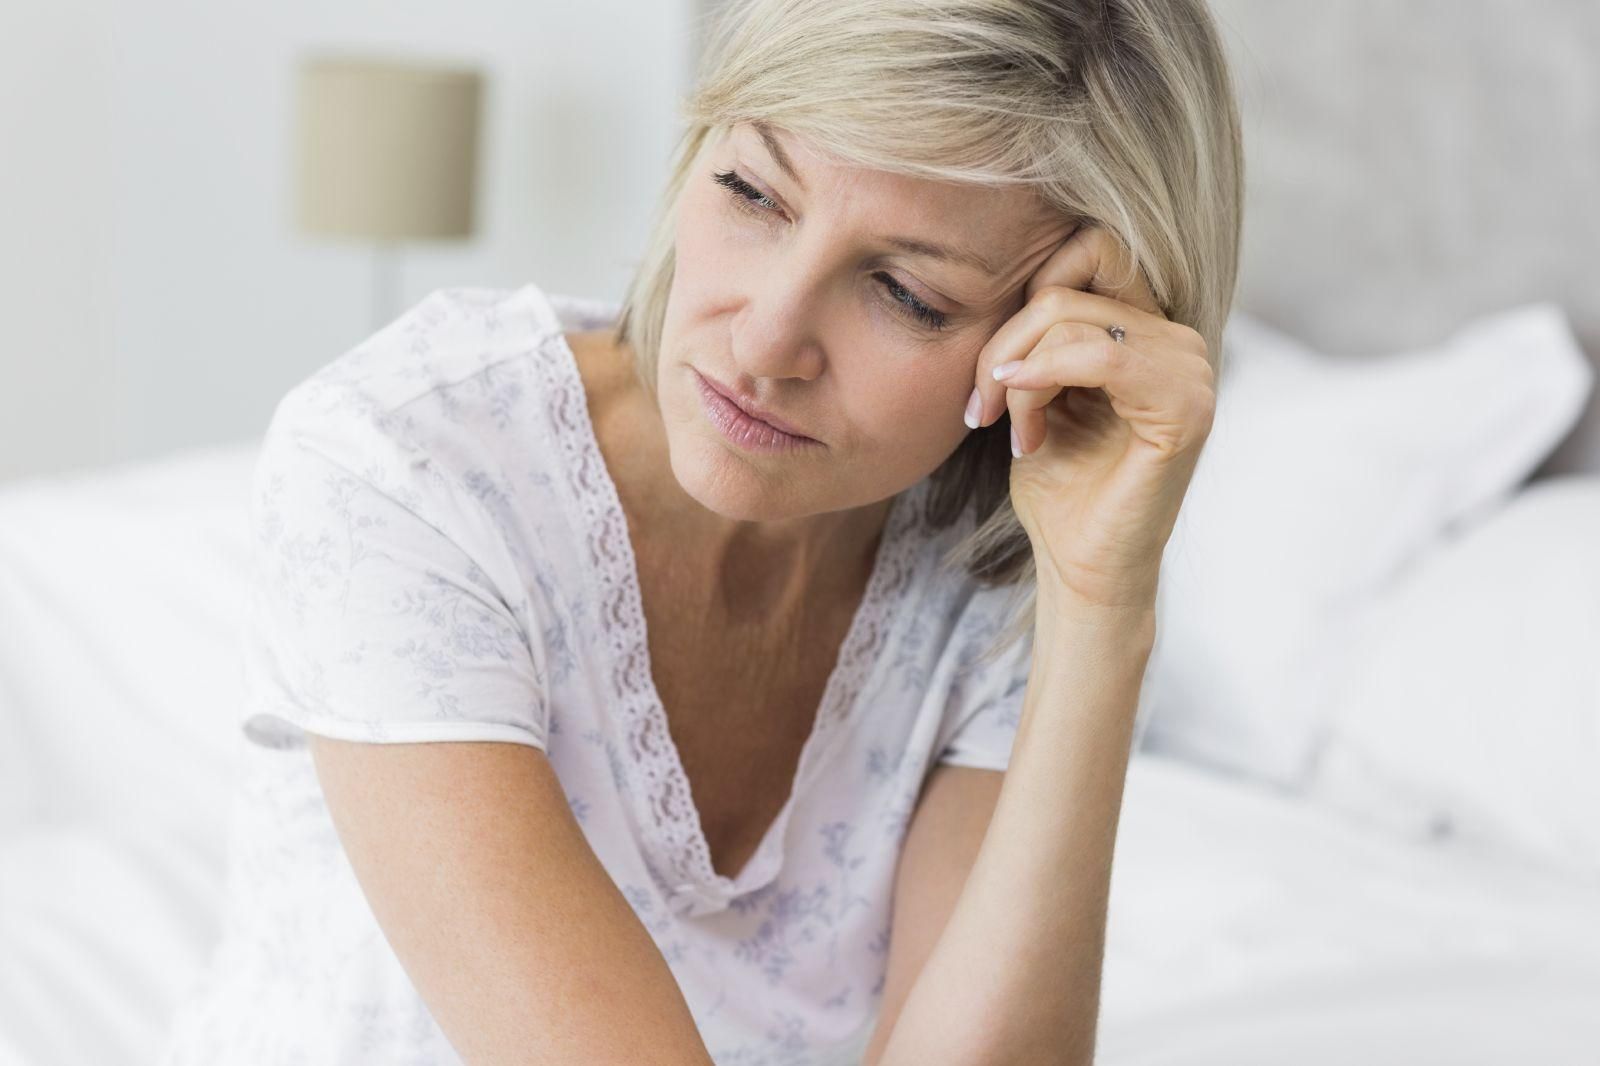 Лечение симптомов менопаузы может вызвать рак